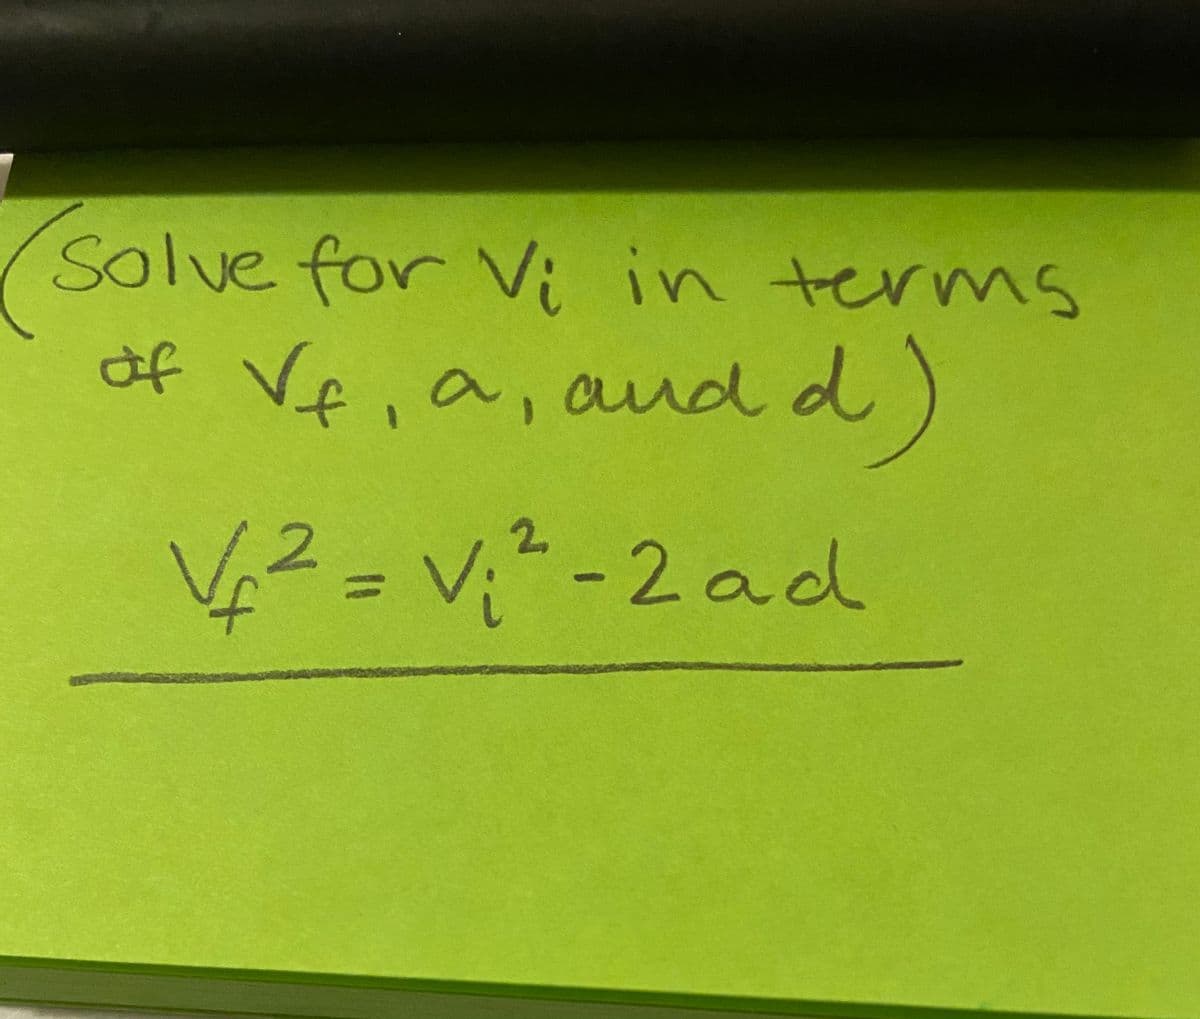 Solve for Vi in terns
of Ve, a, and d
42=V;²-2ad
%3D
